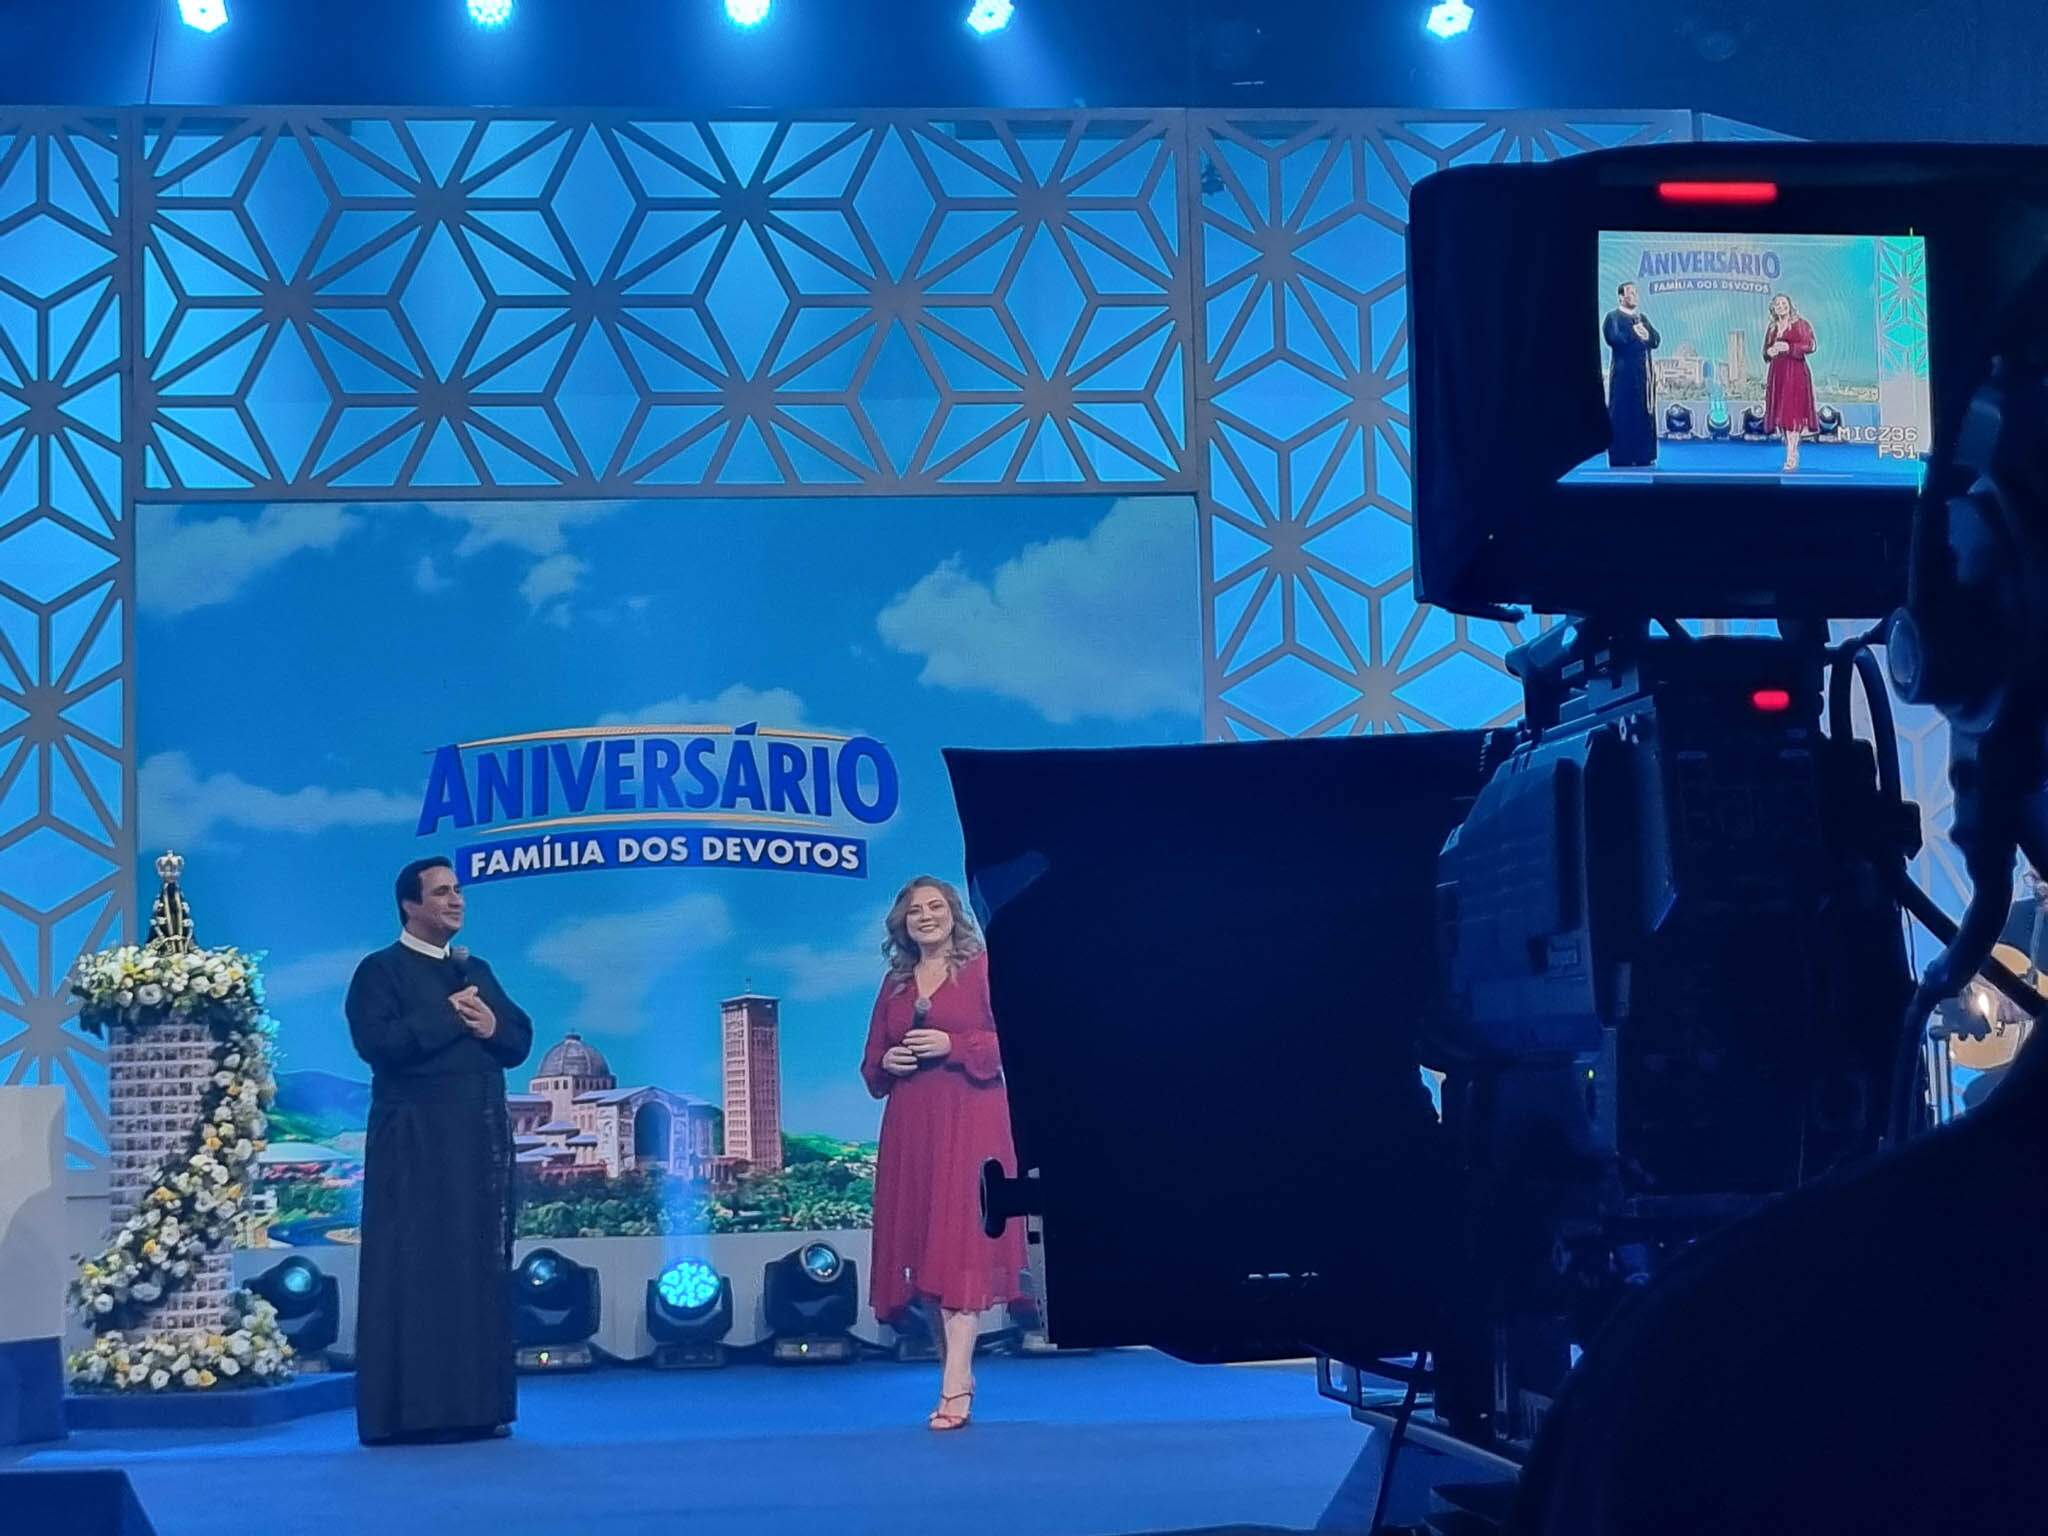 TV Aparecida transmite ao vivo a Central Família dos Devotos com Mariangela Zan e Pe. José Luís Queimado.